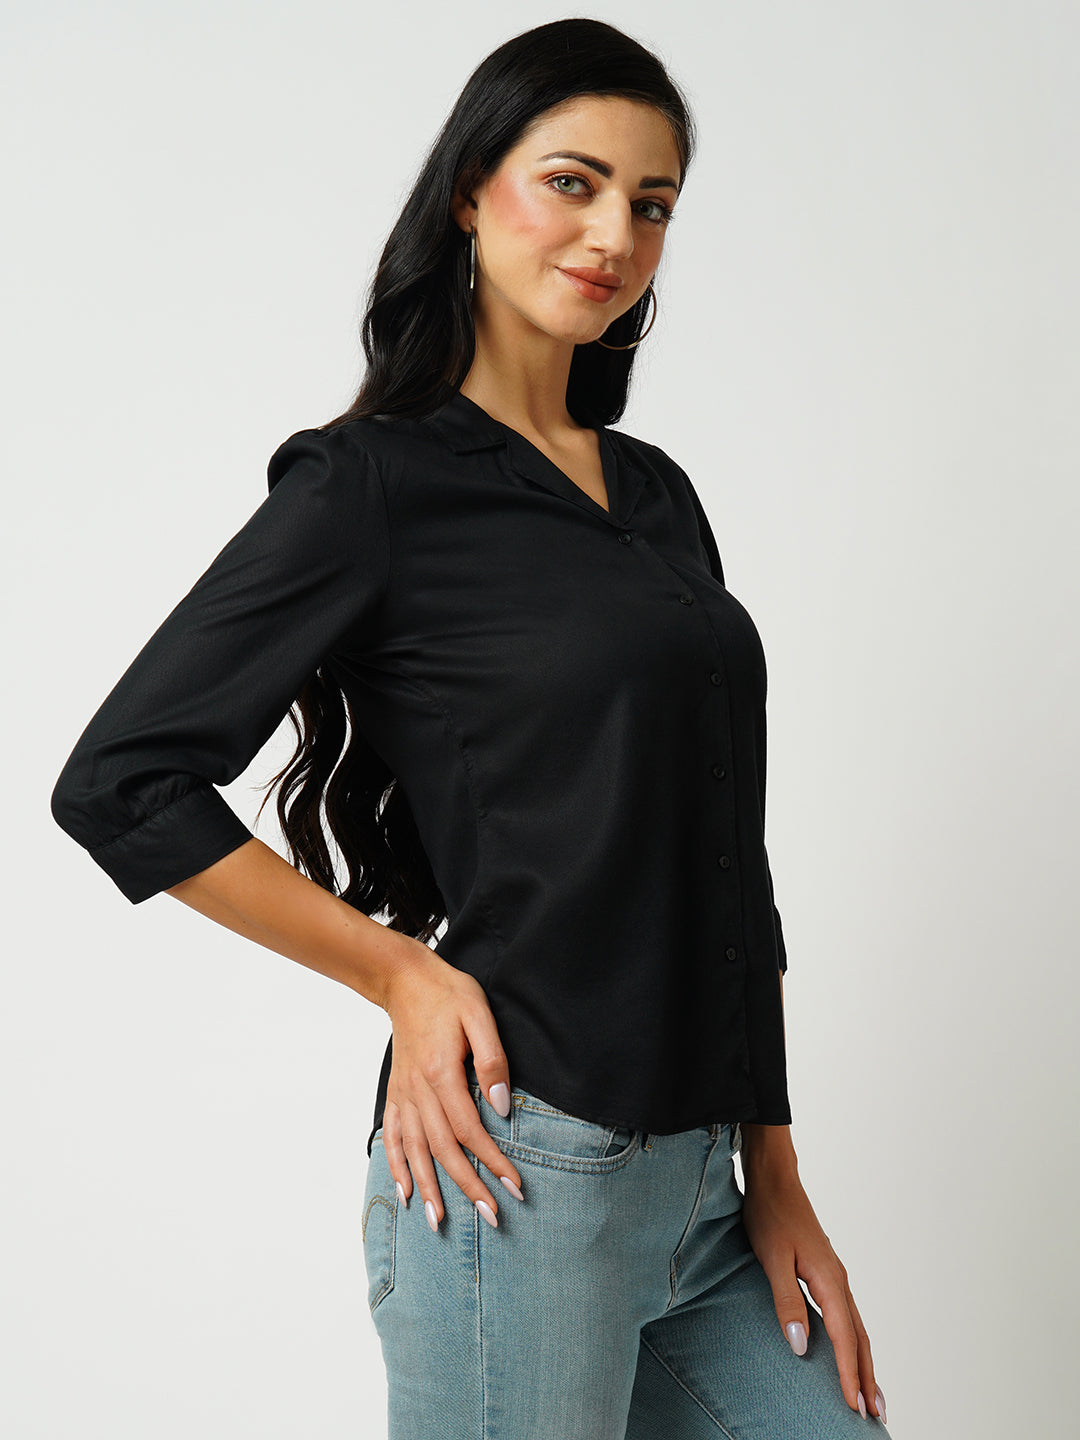 Womens Black Three-Quarter Sleeves Shirts